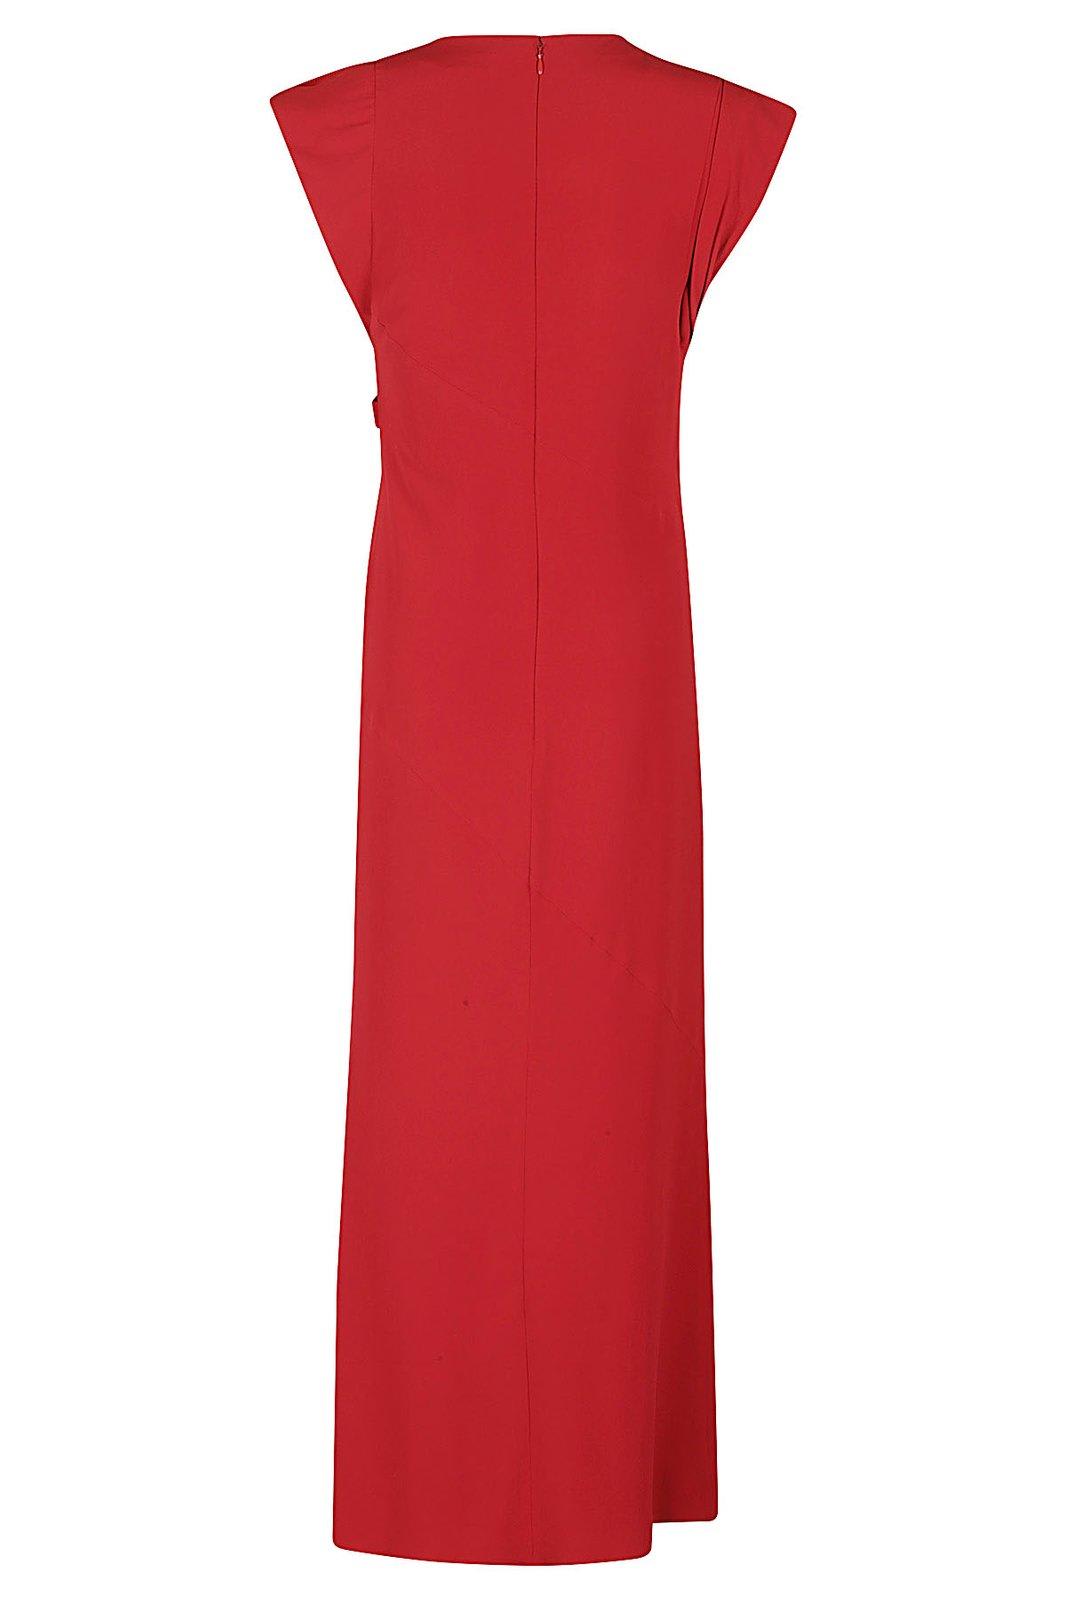 ISABEL MARANT Kapri sleeveless dress - Red